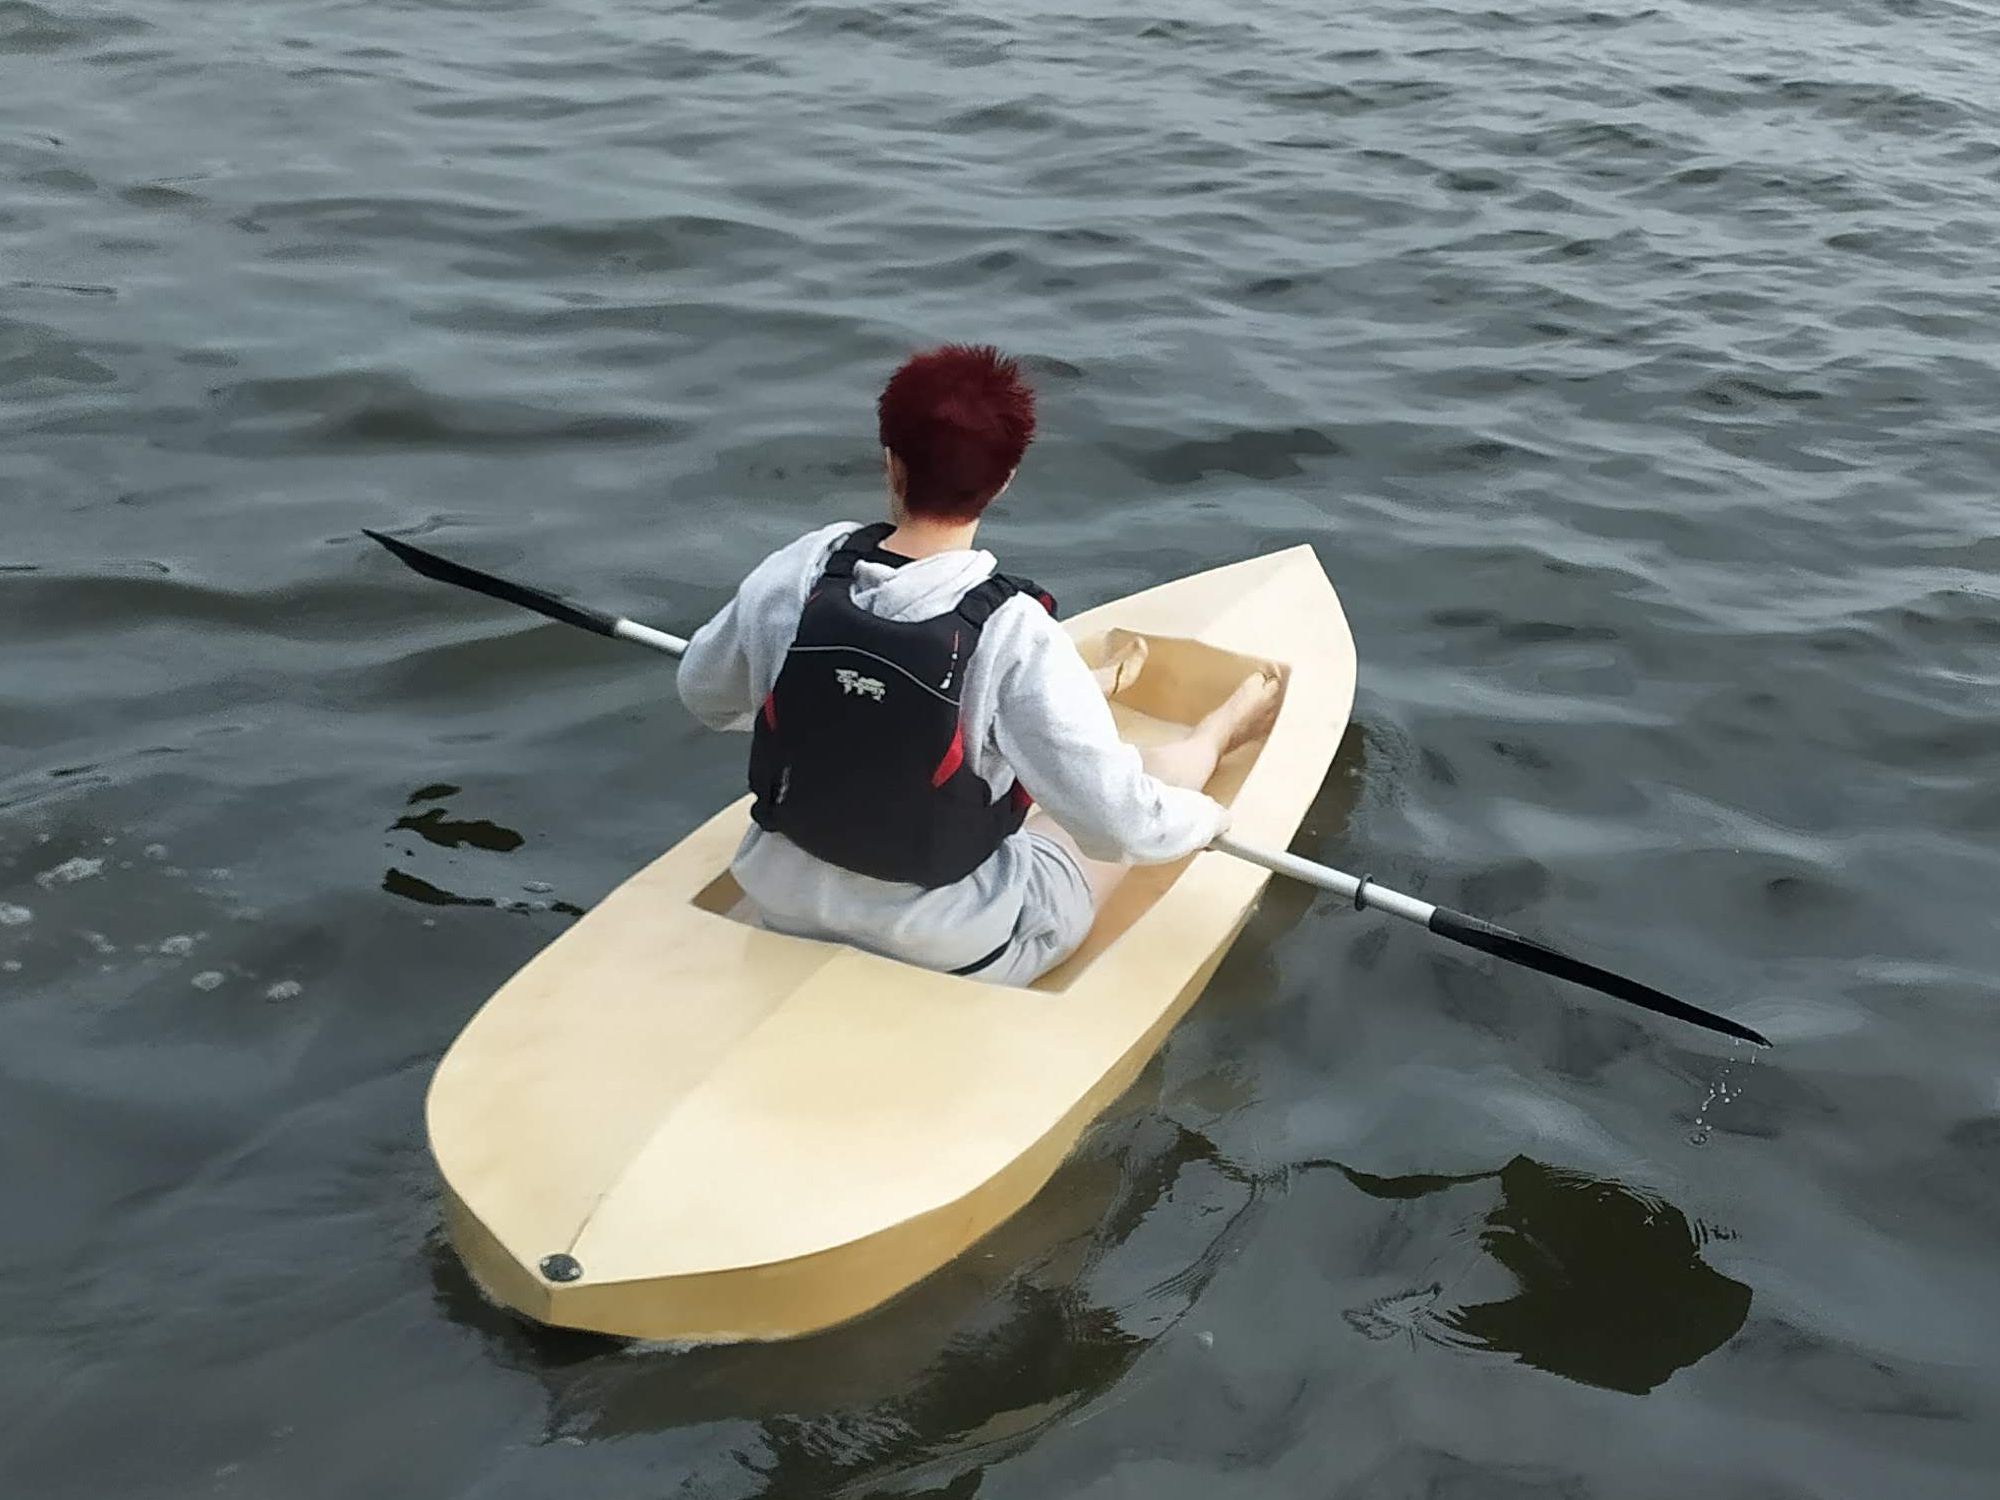 240 cm x 80 cm - seat up kayak – CNC Plans